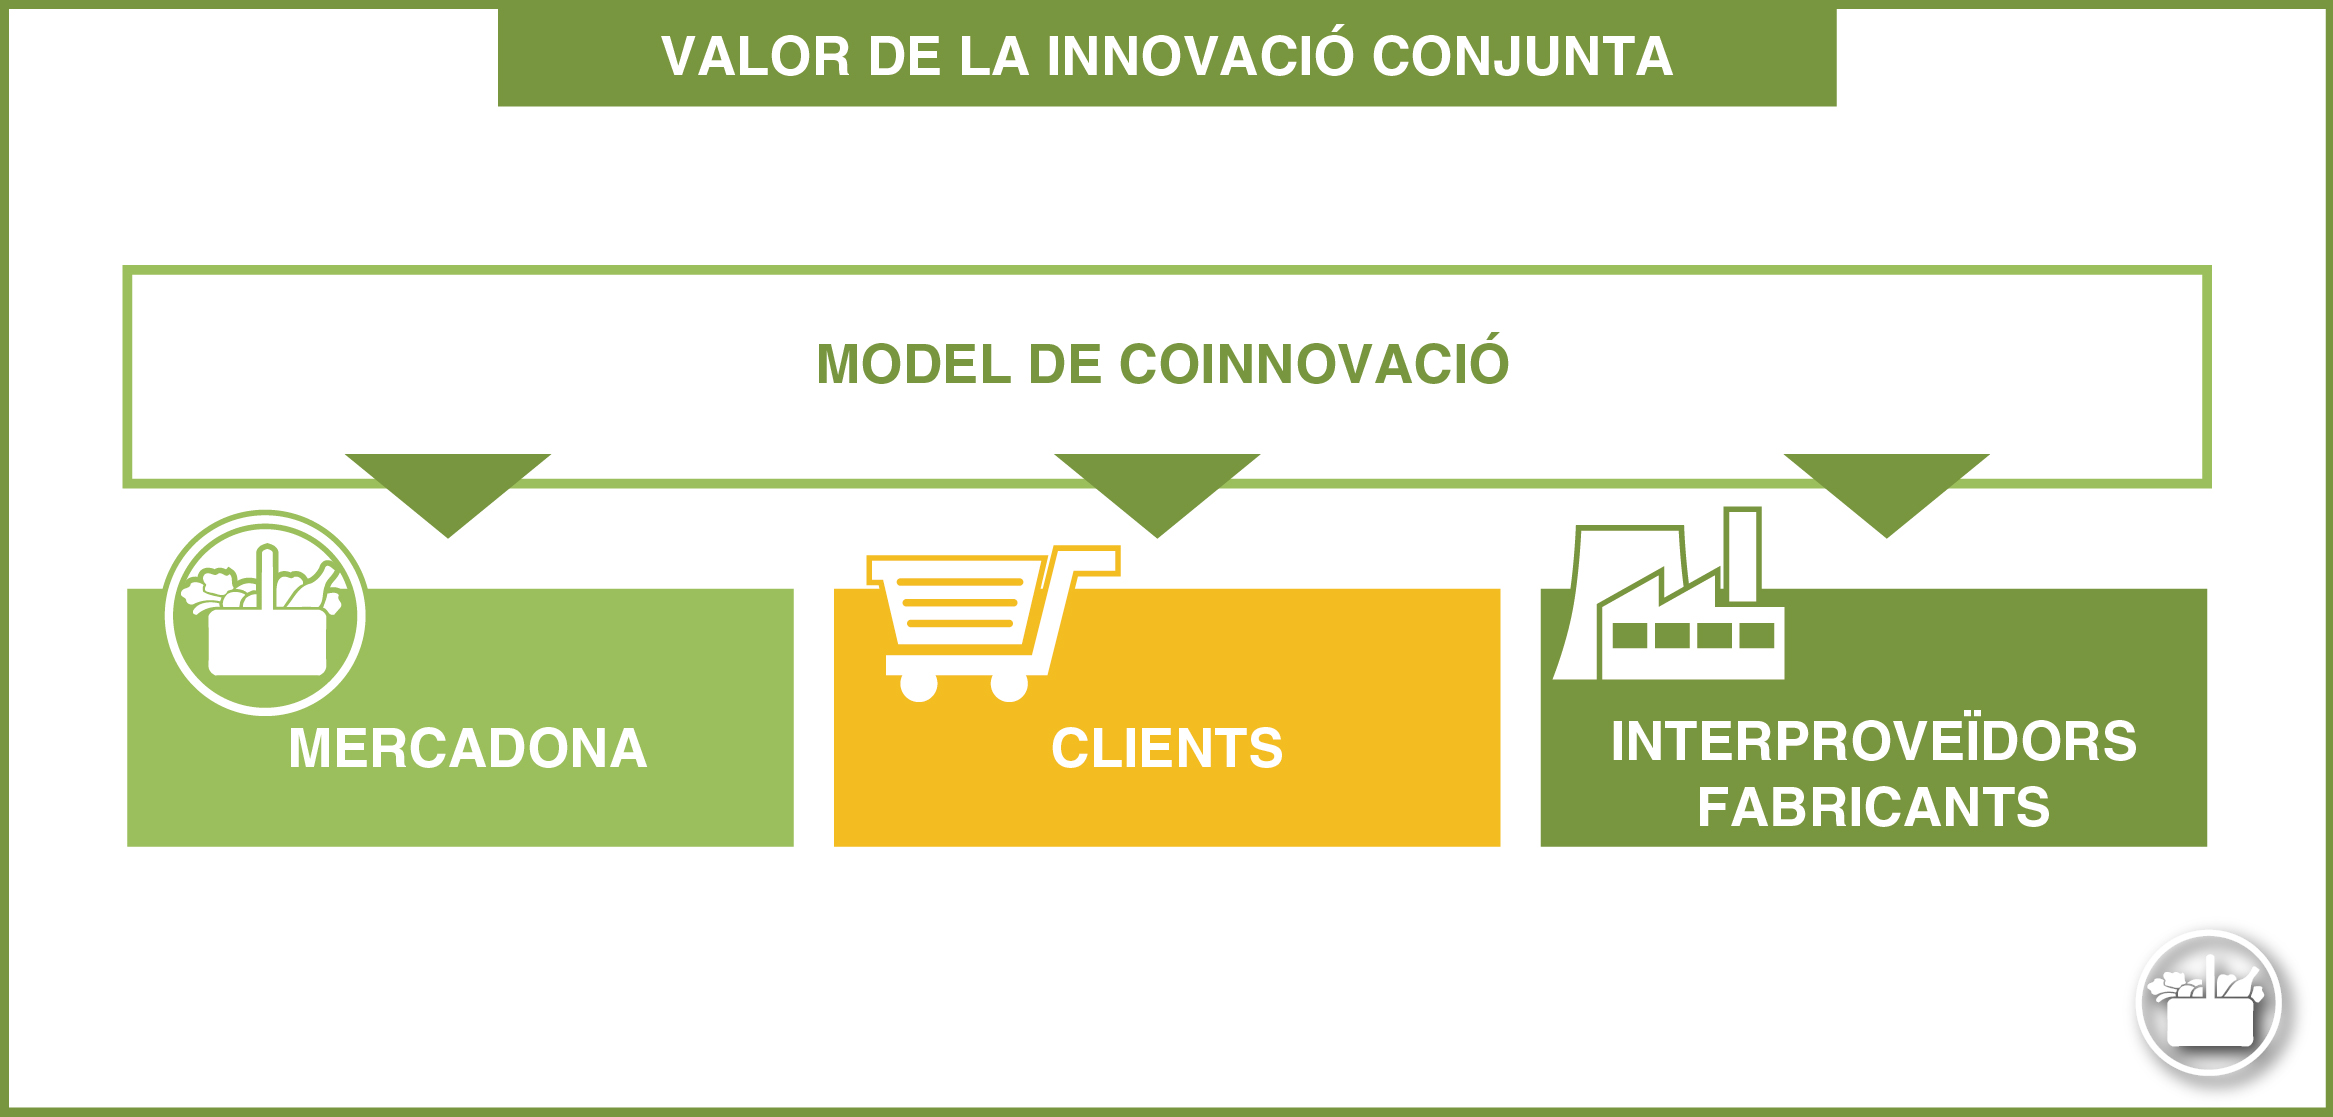 Valoració del Model de Coinnovació per part dels fabricants interproveïdors